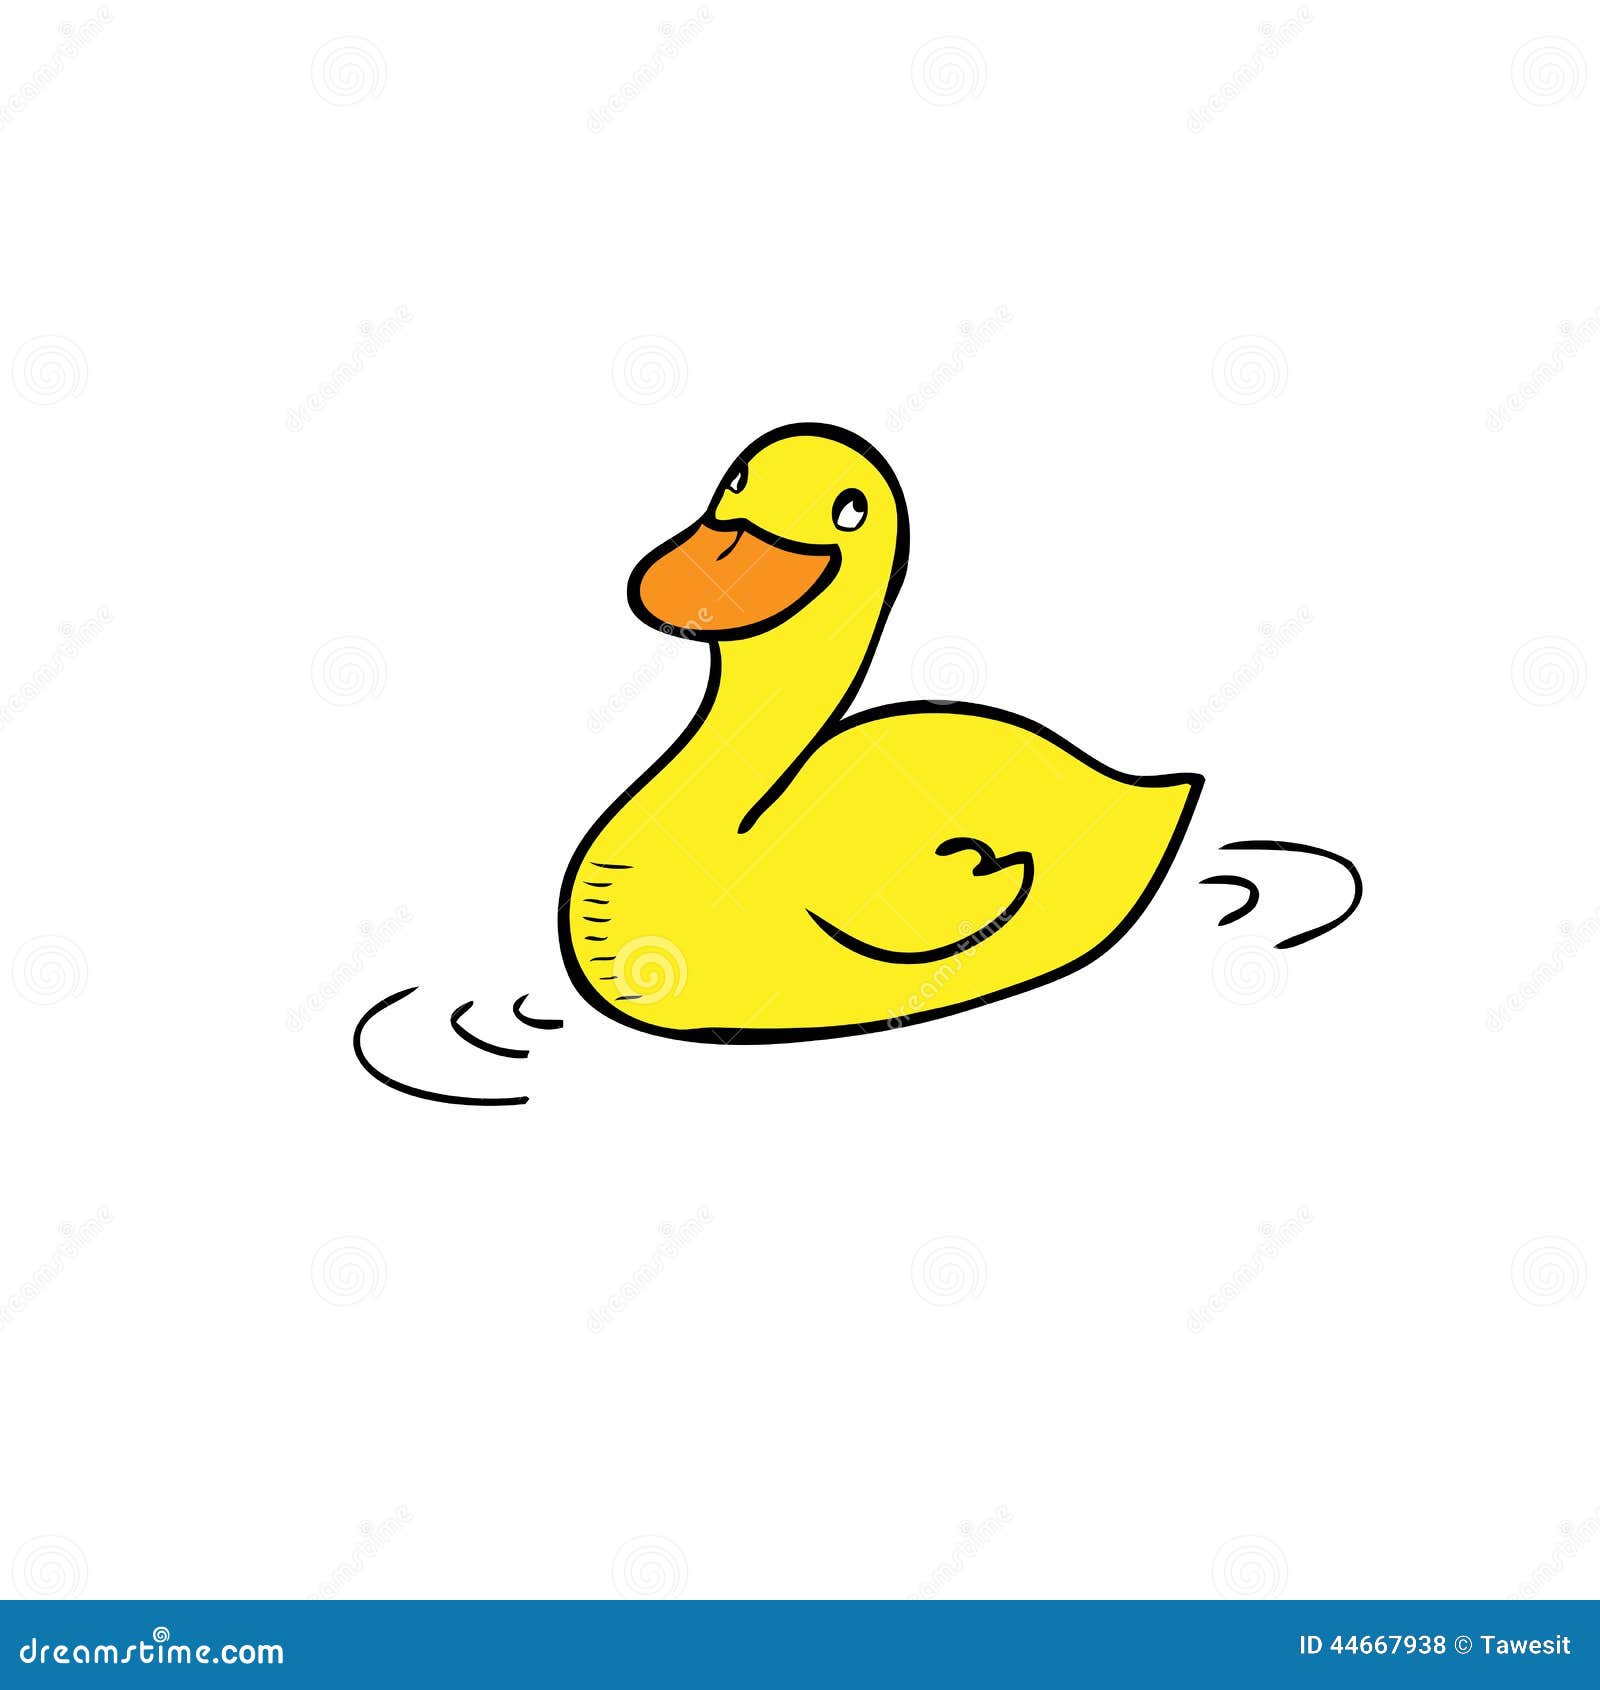 Duck Stock Vector - Image: 44667938